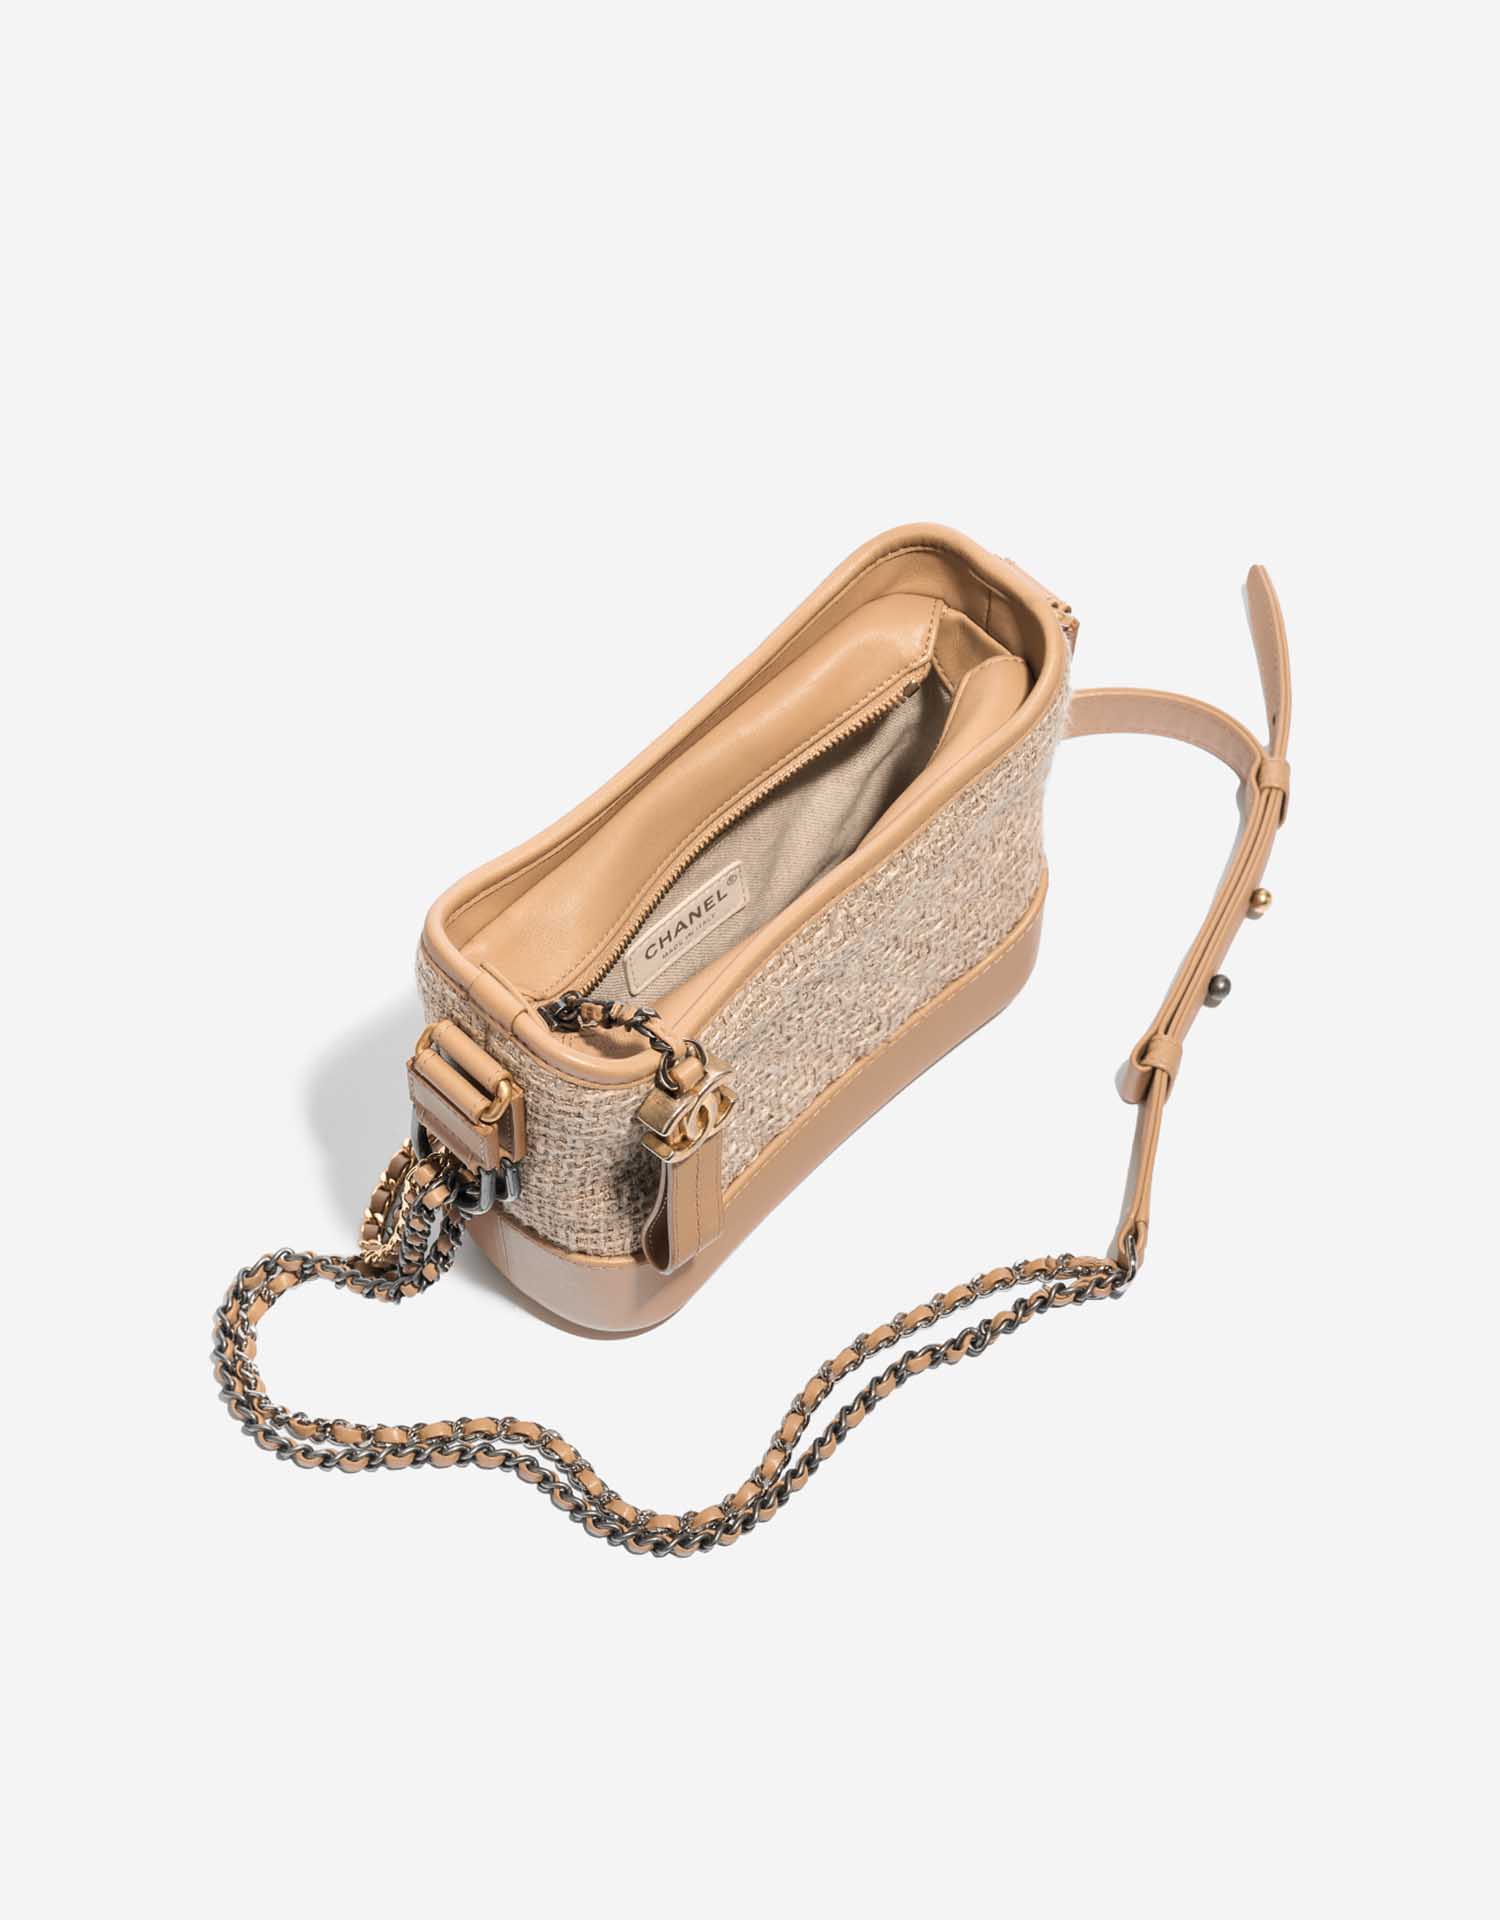 Gebrauchte Chanel Tasche Gabrielle Small Tweed / Kalbsleder Beige Beige Innenseite | Verkaufen Sie Ihre Designer-Tasche auf Saclab.com